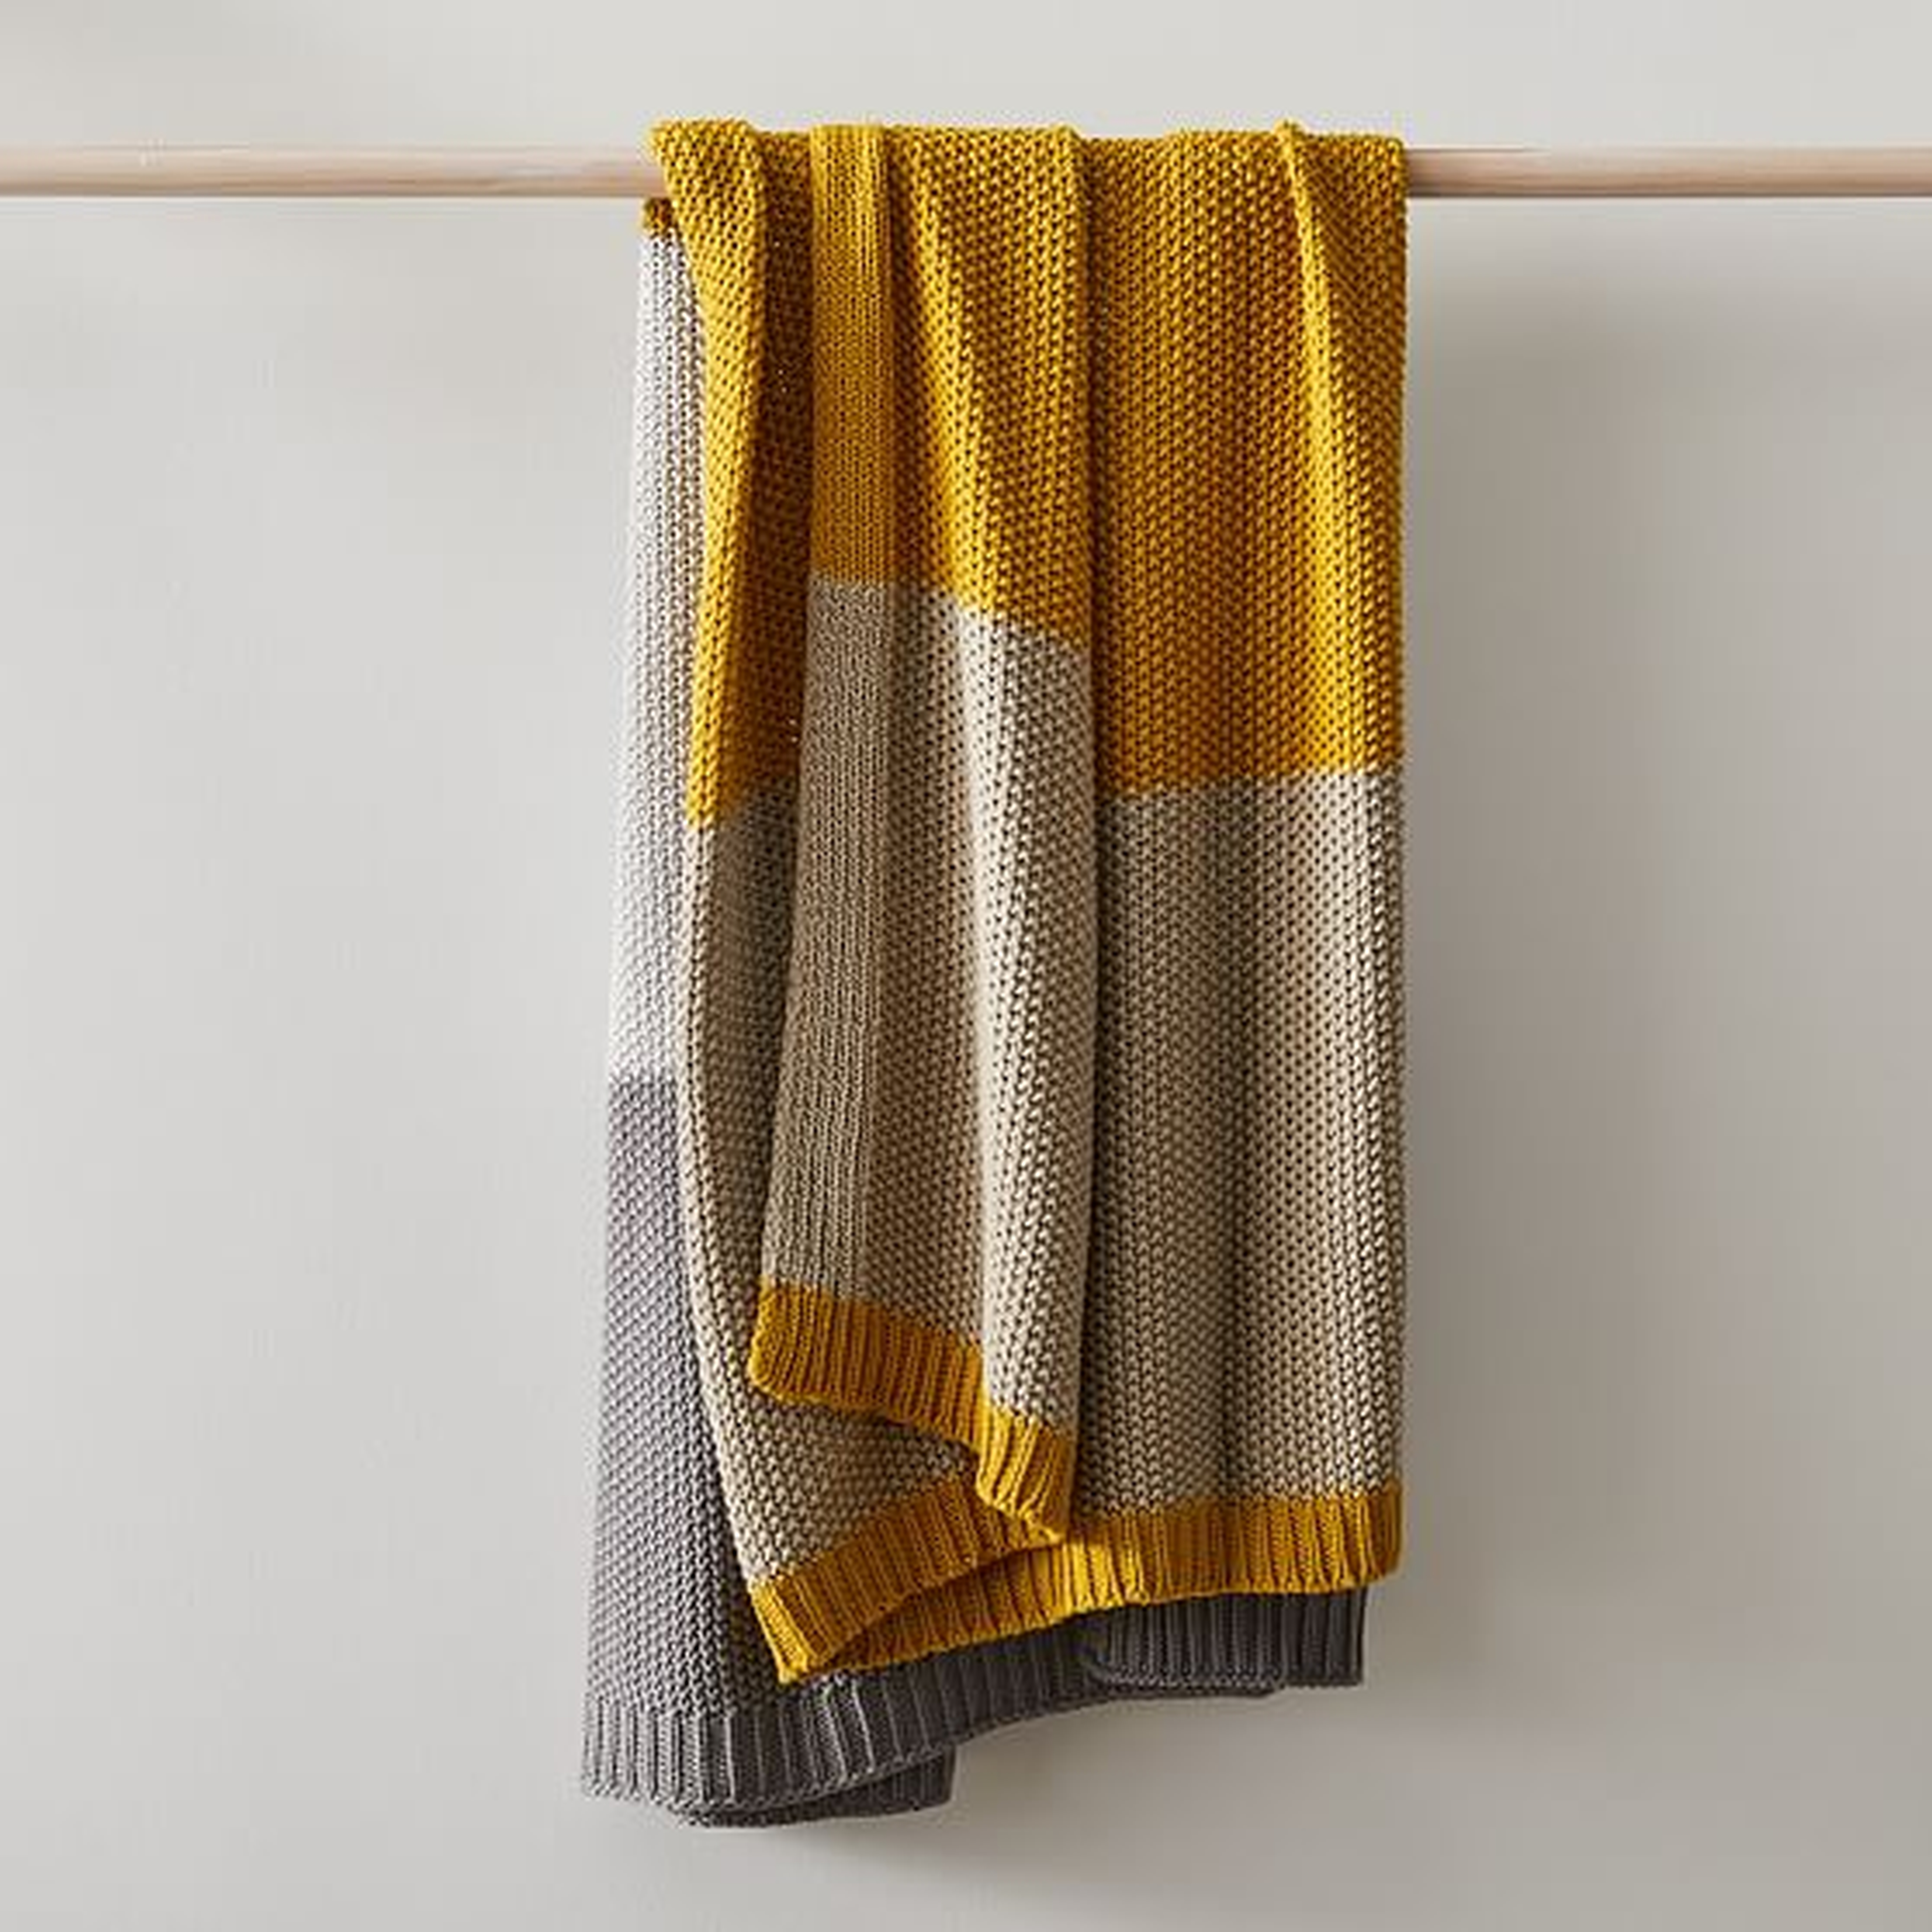 Modern Striped Cotton Knit Throw, 50"x60", Dark Horseradish - West Elm